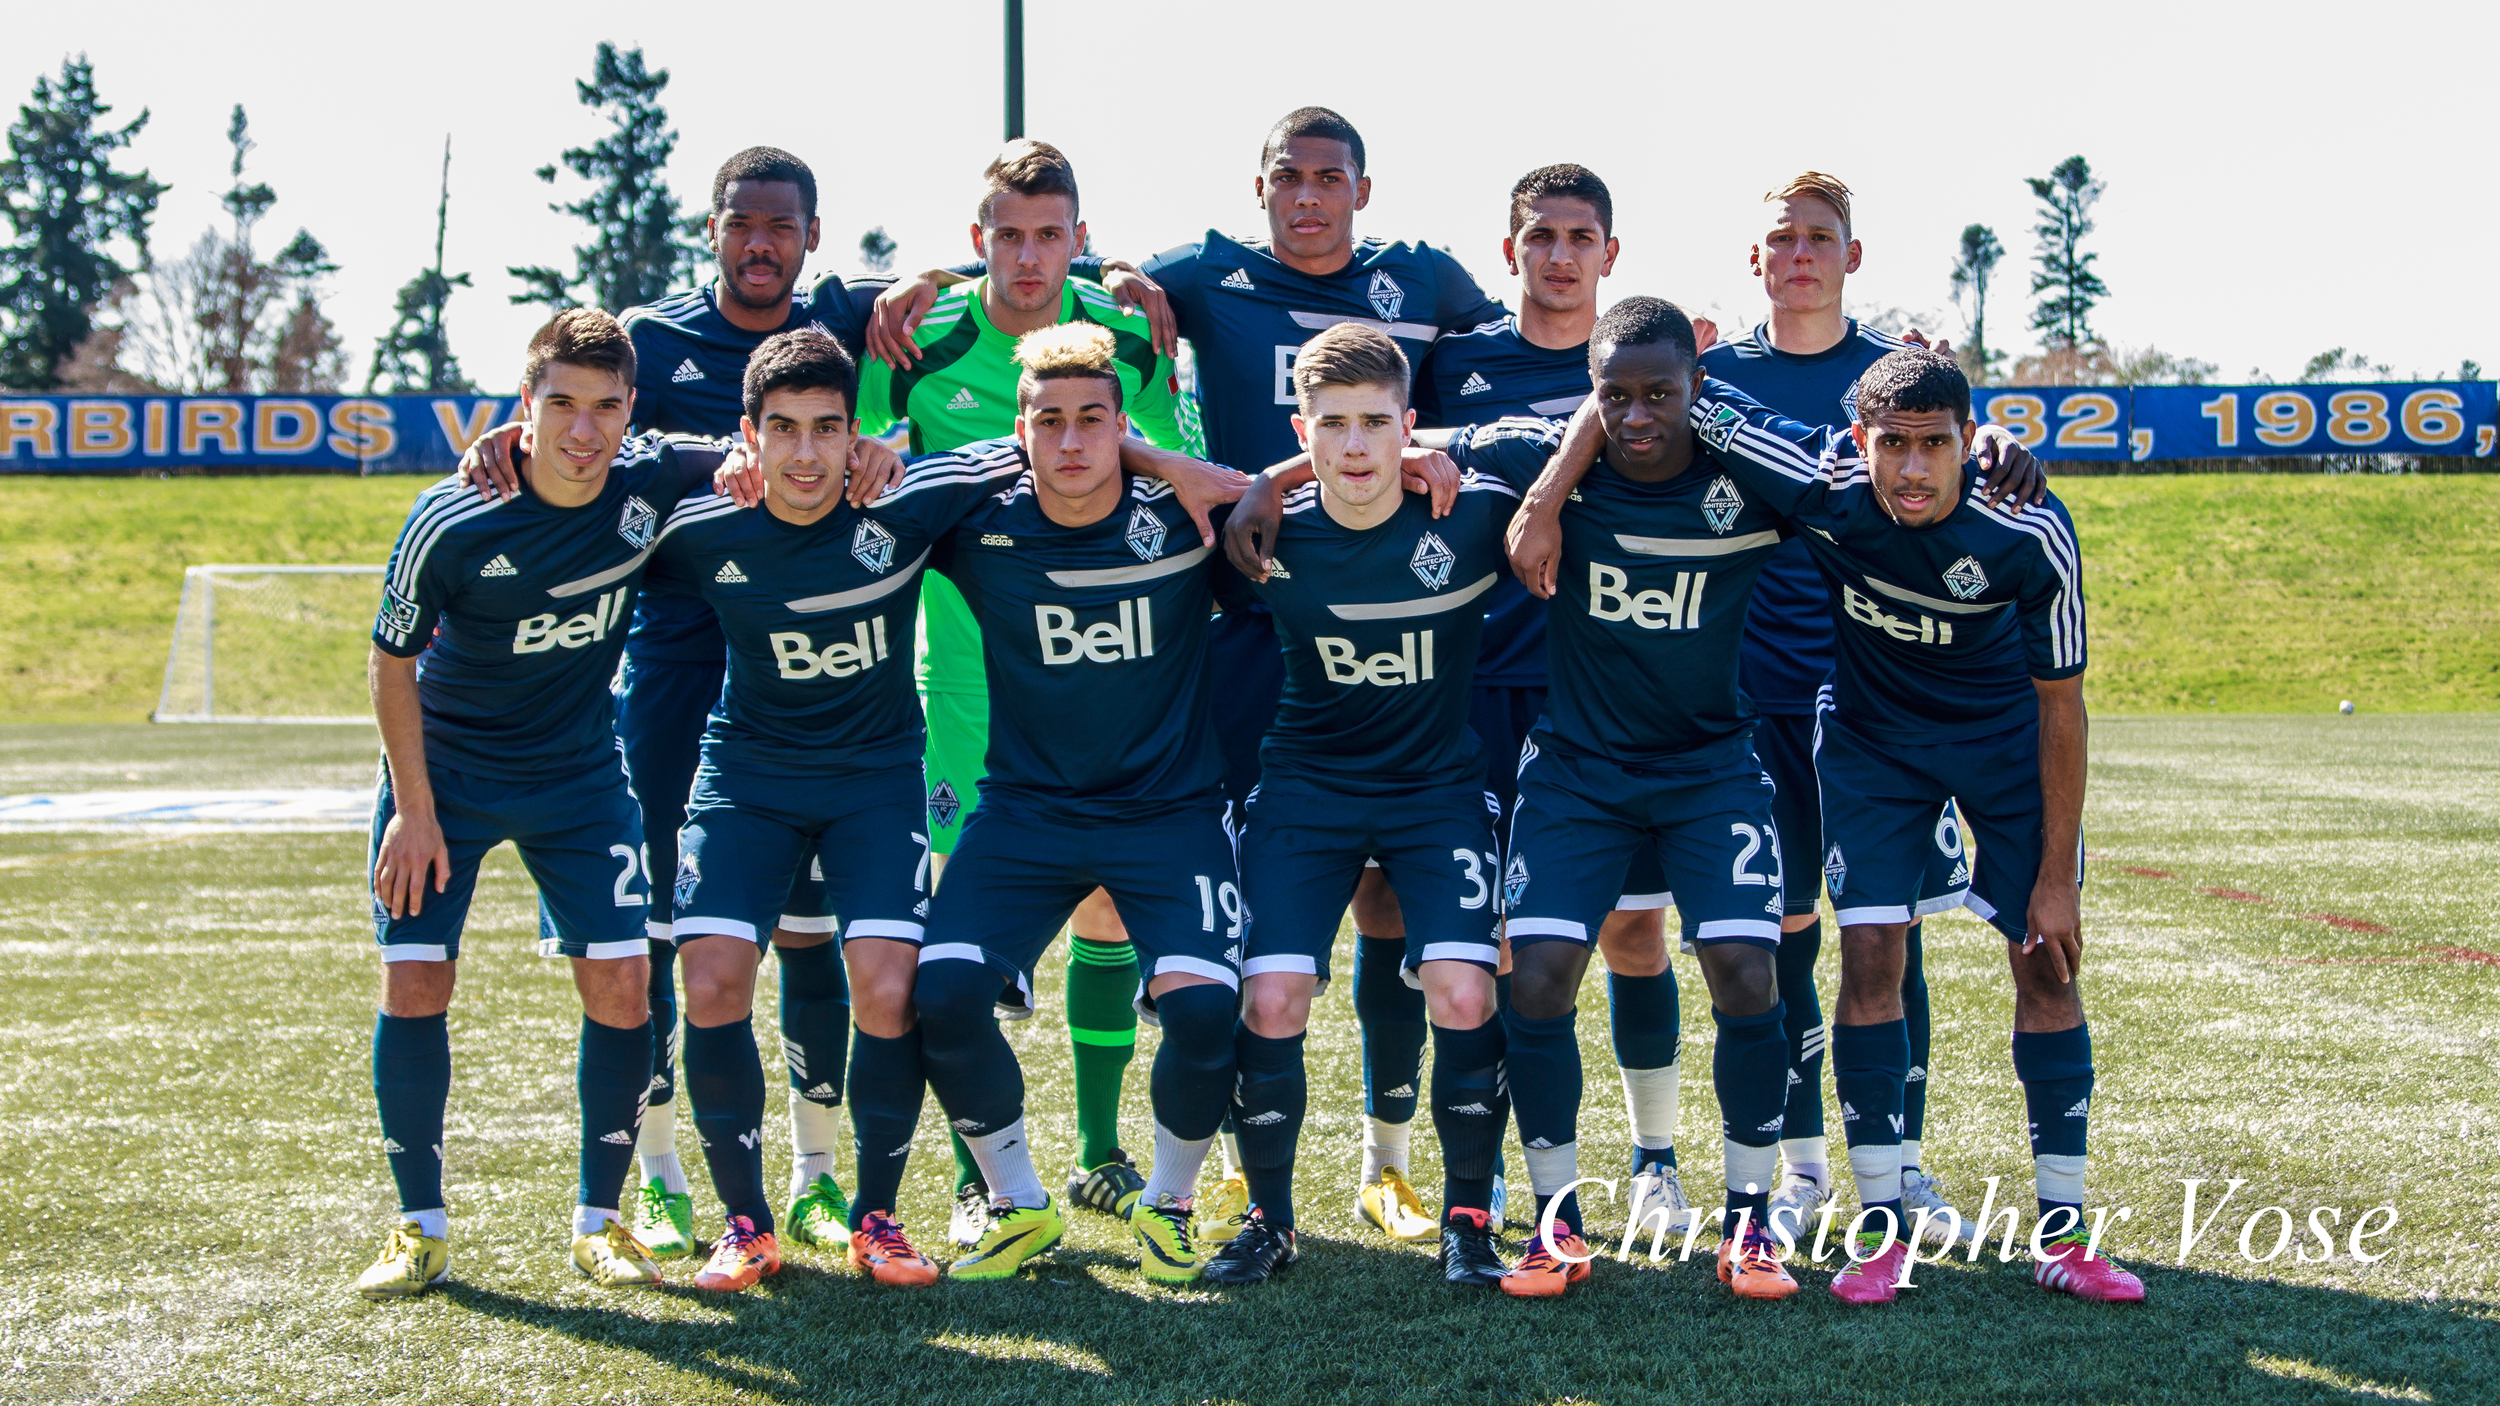 2014-04-01 Vancouver Whitecaps FC.jpg